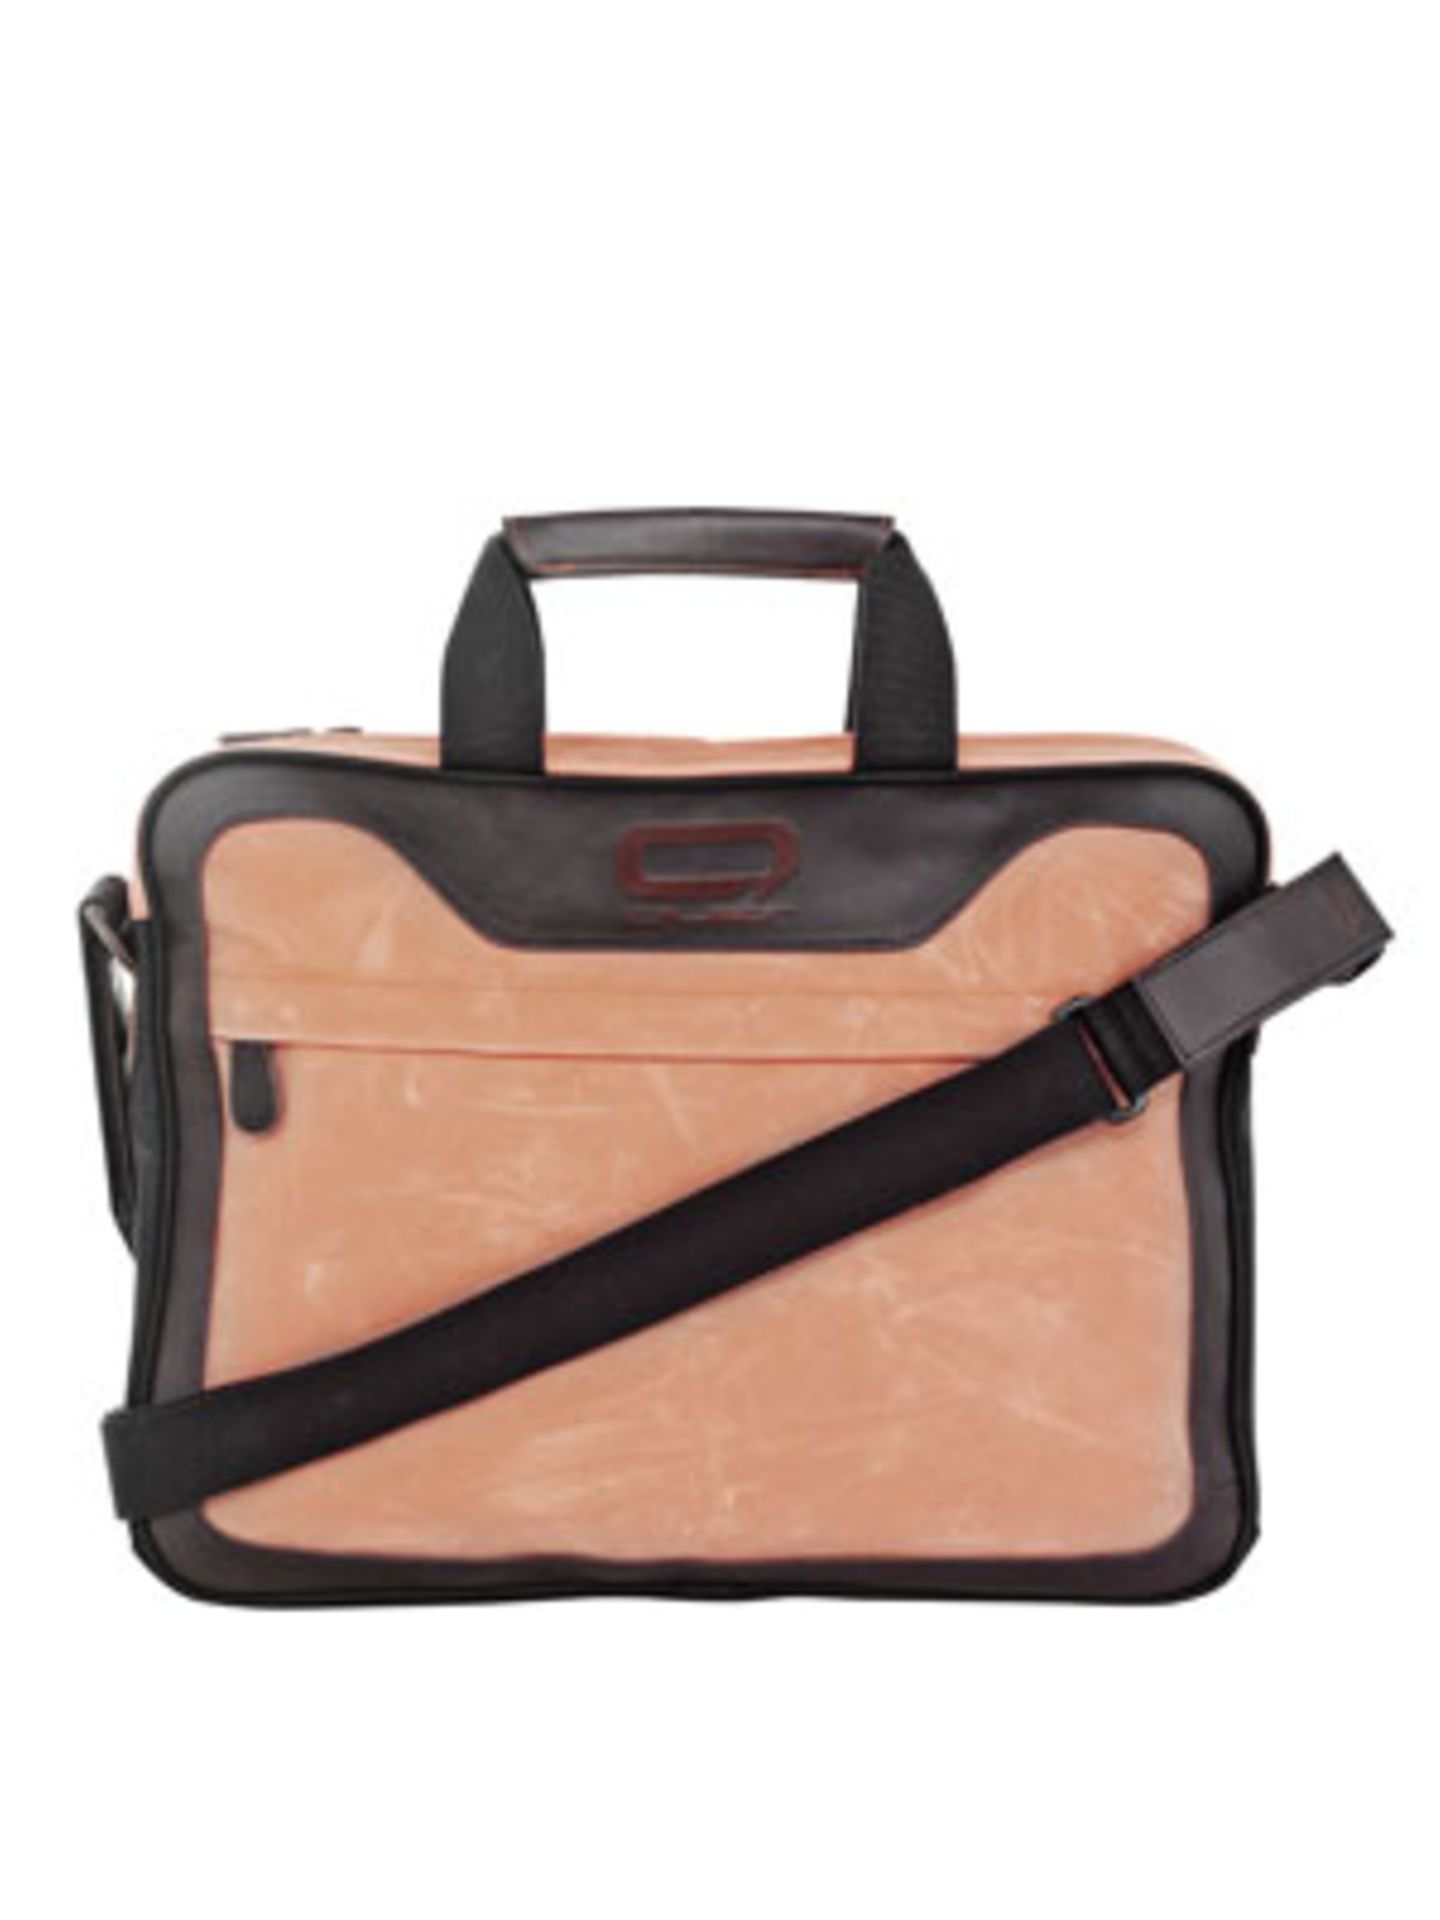 Laptop-Tasche "Querworker" in Apricot aus Leder von Quer, um 90 Euro.